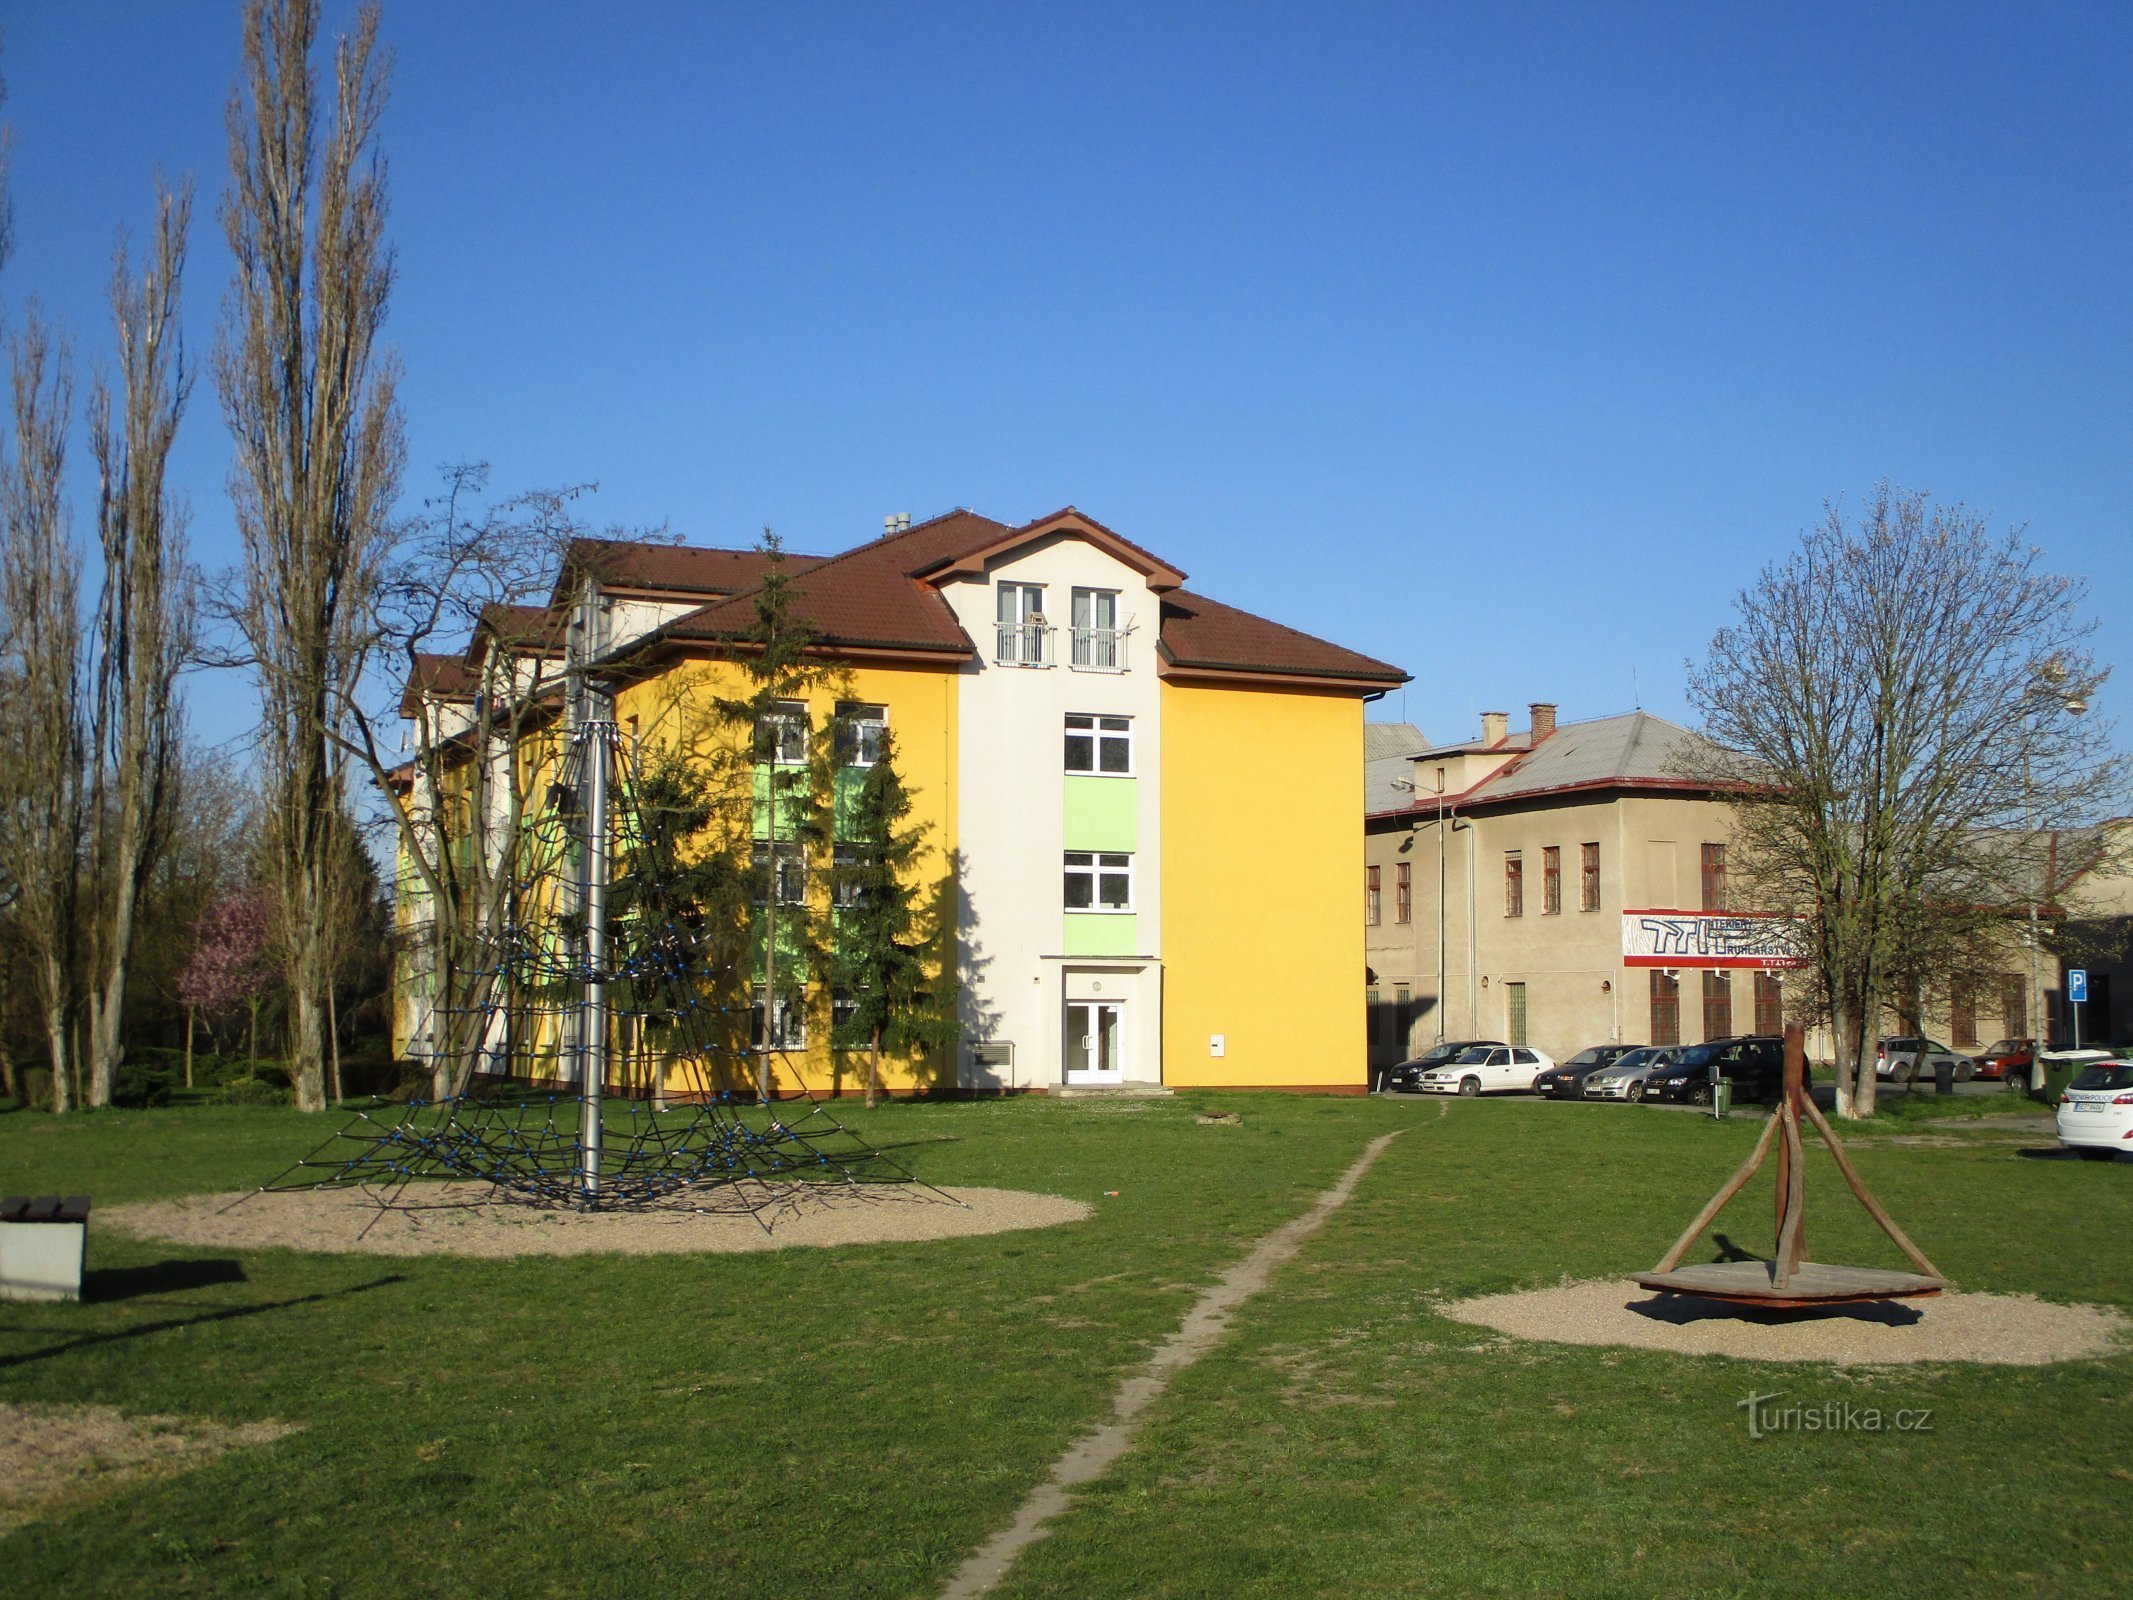 Area dell'ex zuccherificio (Opatovice nad Labem, 12.4.2020 aprile XNUMX)